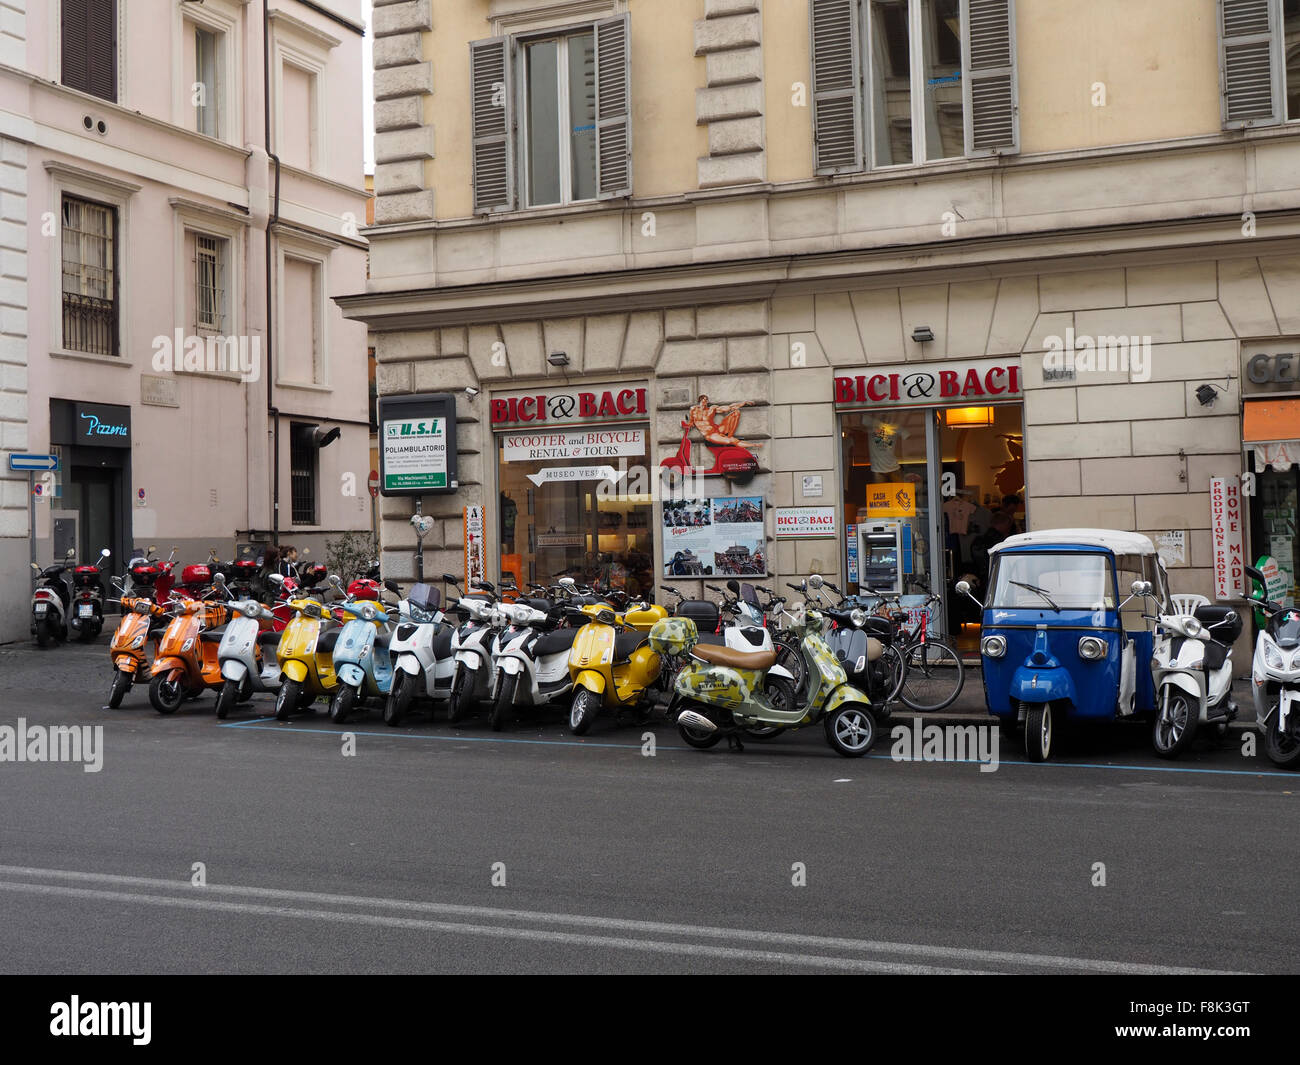 Bici & Baci noleggio scooter azienda nel centro della città di Roma, Italia  Foto stock - Alamy